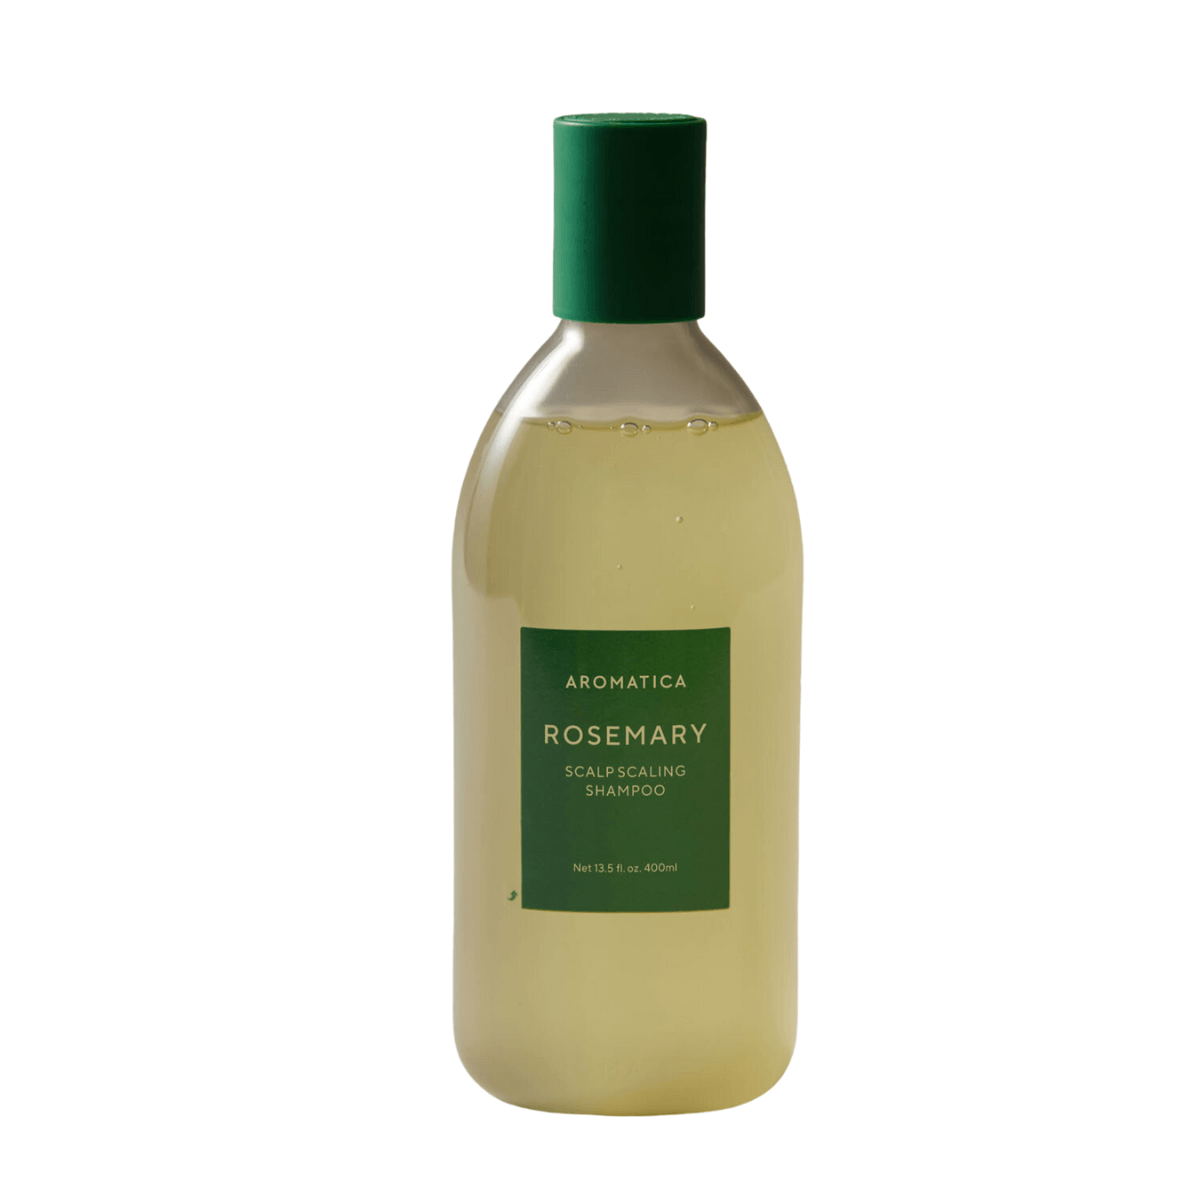 Rosemary Scalp Scaling Shampoo - 180 ml/ 400 ml - K-Beauty Arabia